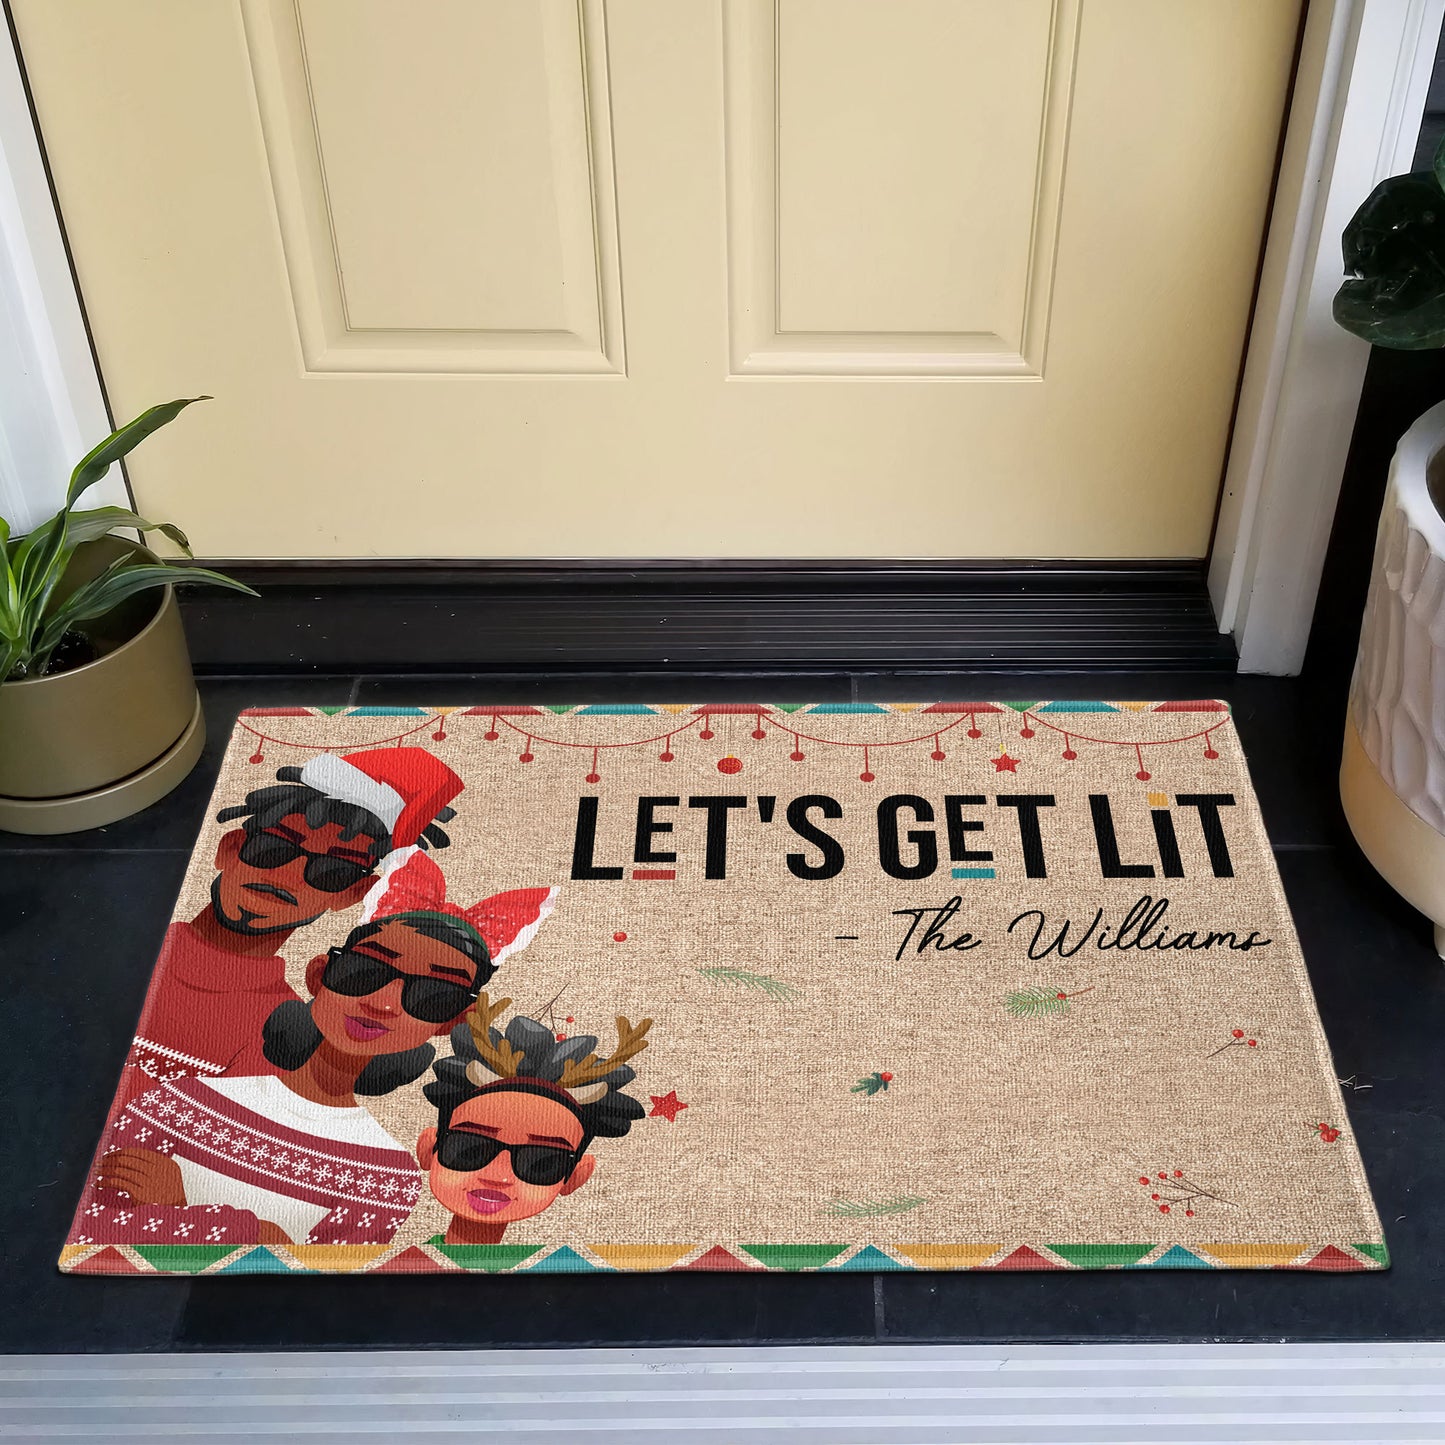 Let's Get Lit - Personalized Doormat